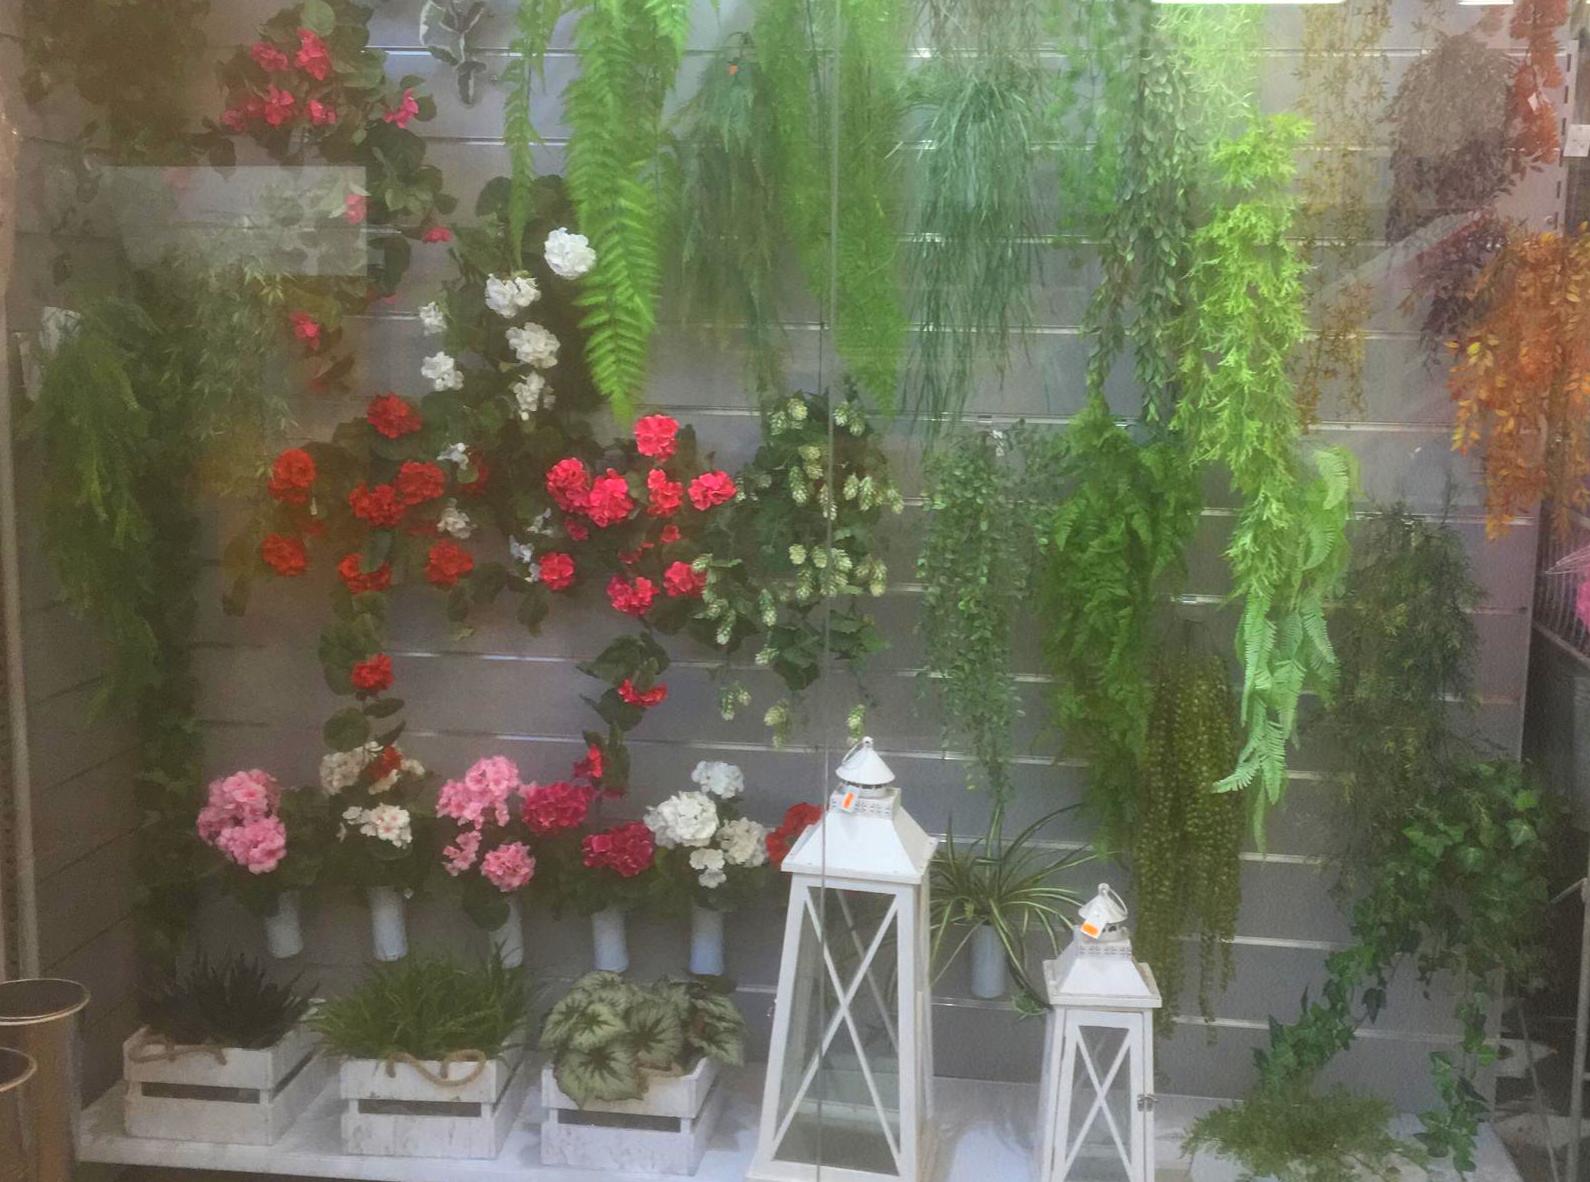 Escaparate del Mercado de la Flor de Vilassar de Mar con plantas colgantes para jardin vertical y faroles decorativos -Fernando Gallego SCP 